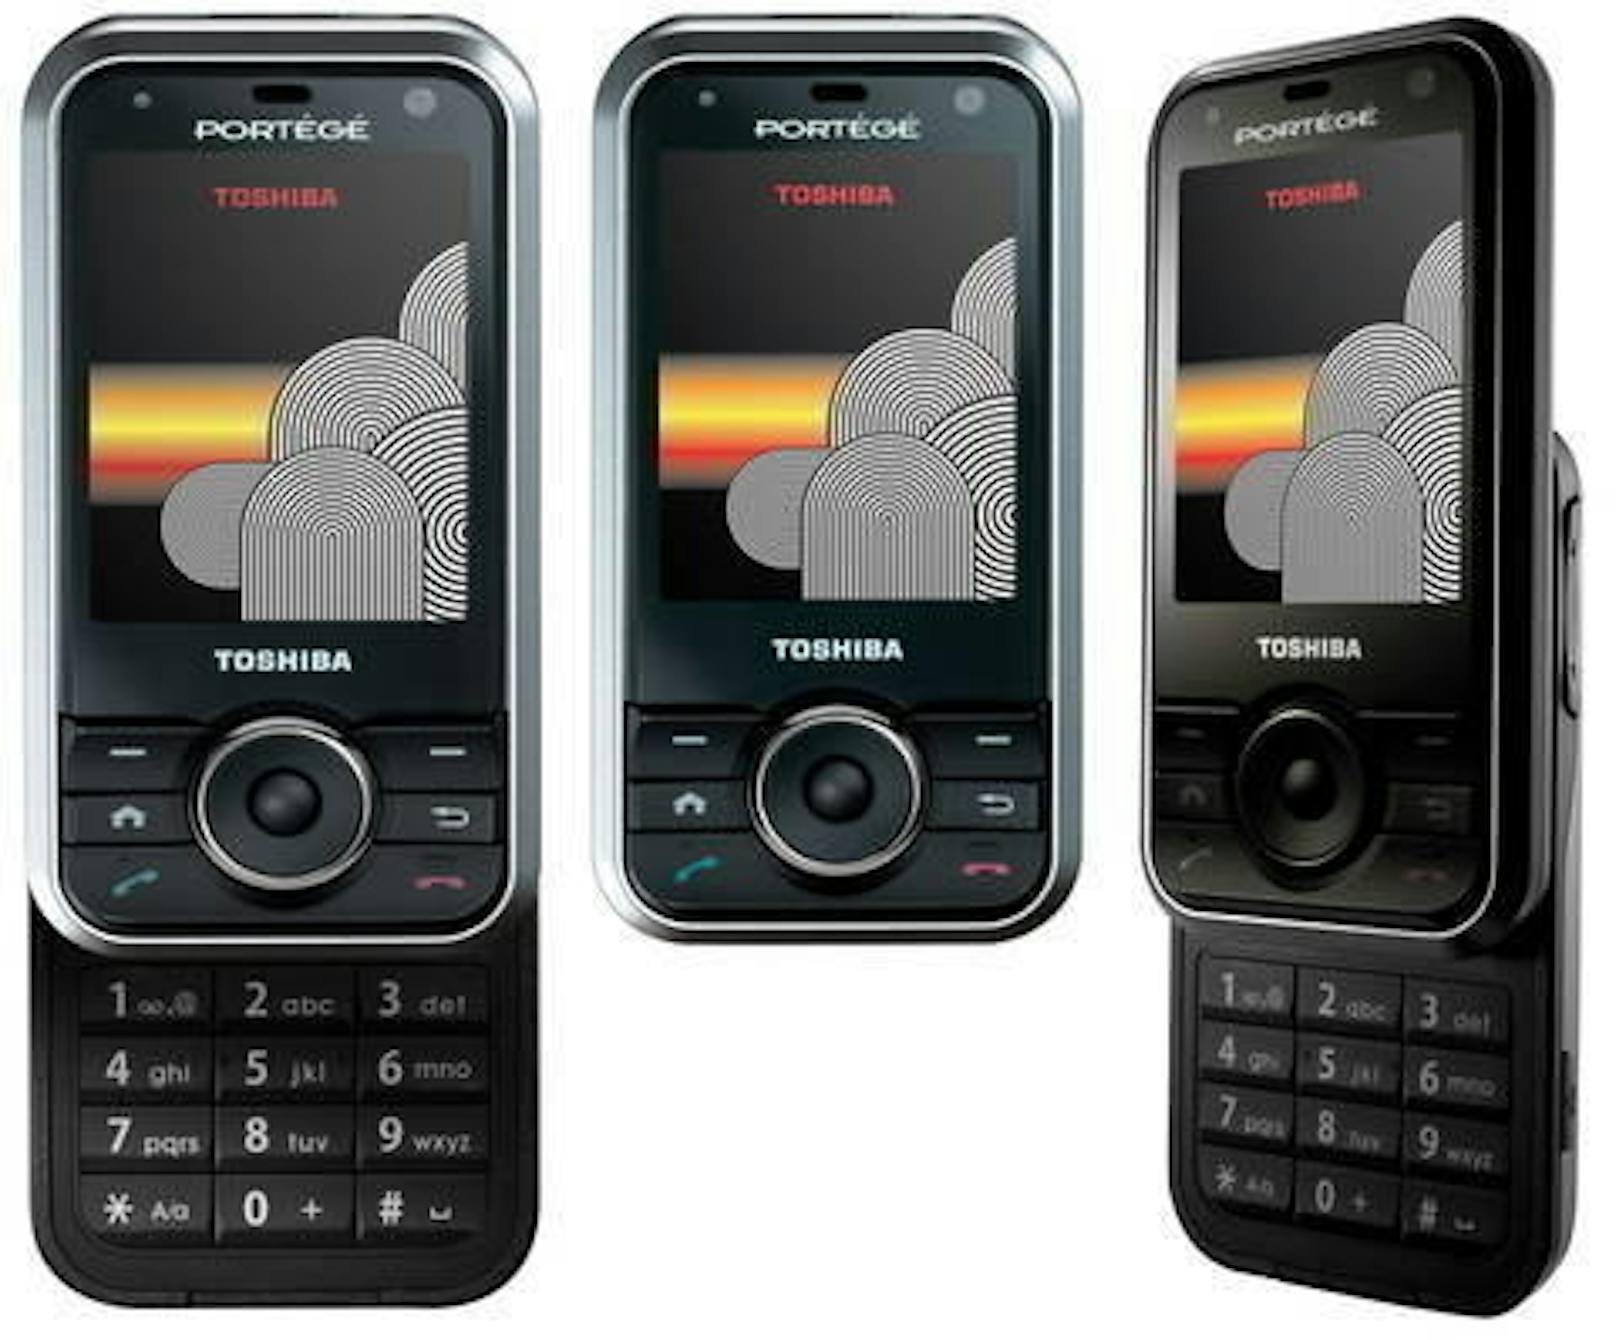 Die ersten Smartphones mit Fingerabdrucksensor gab es aber schon viel früher. Eines der ersten Geräte mit Fingerprintsensor kam 2007 in den Handel. Es war das G500 von Toshiba.